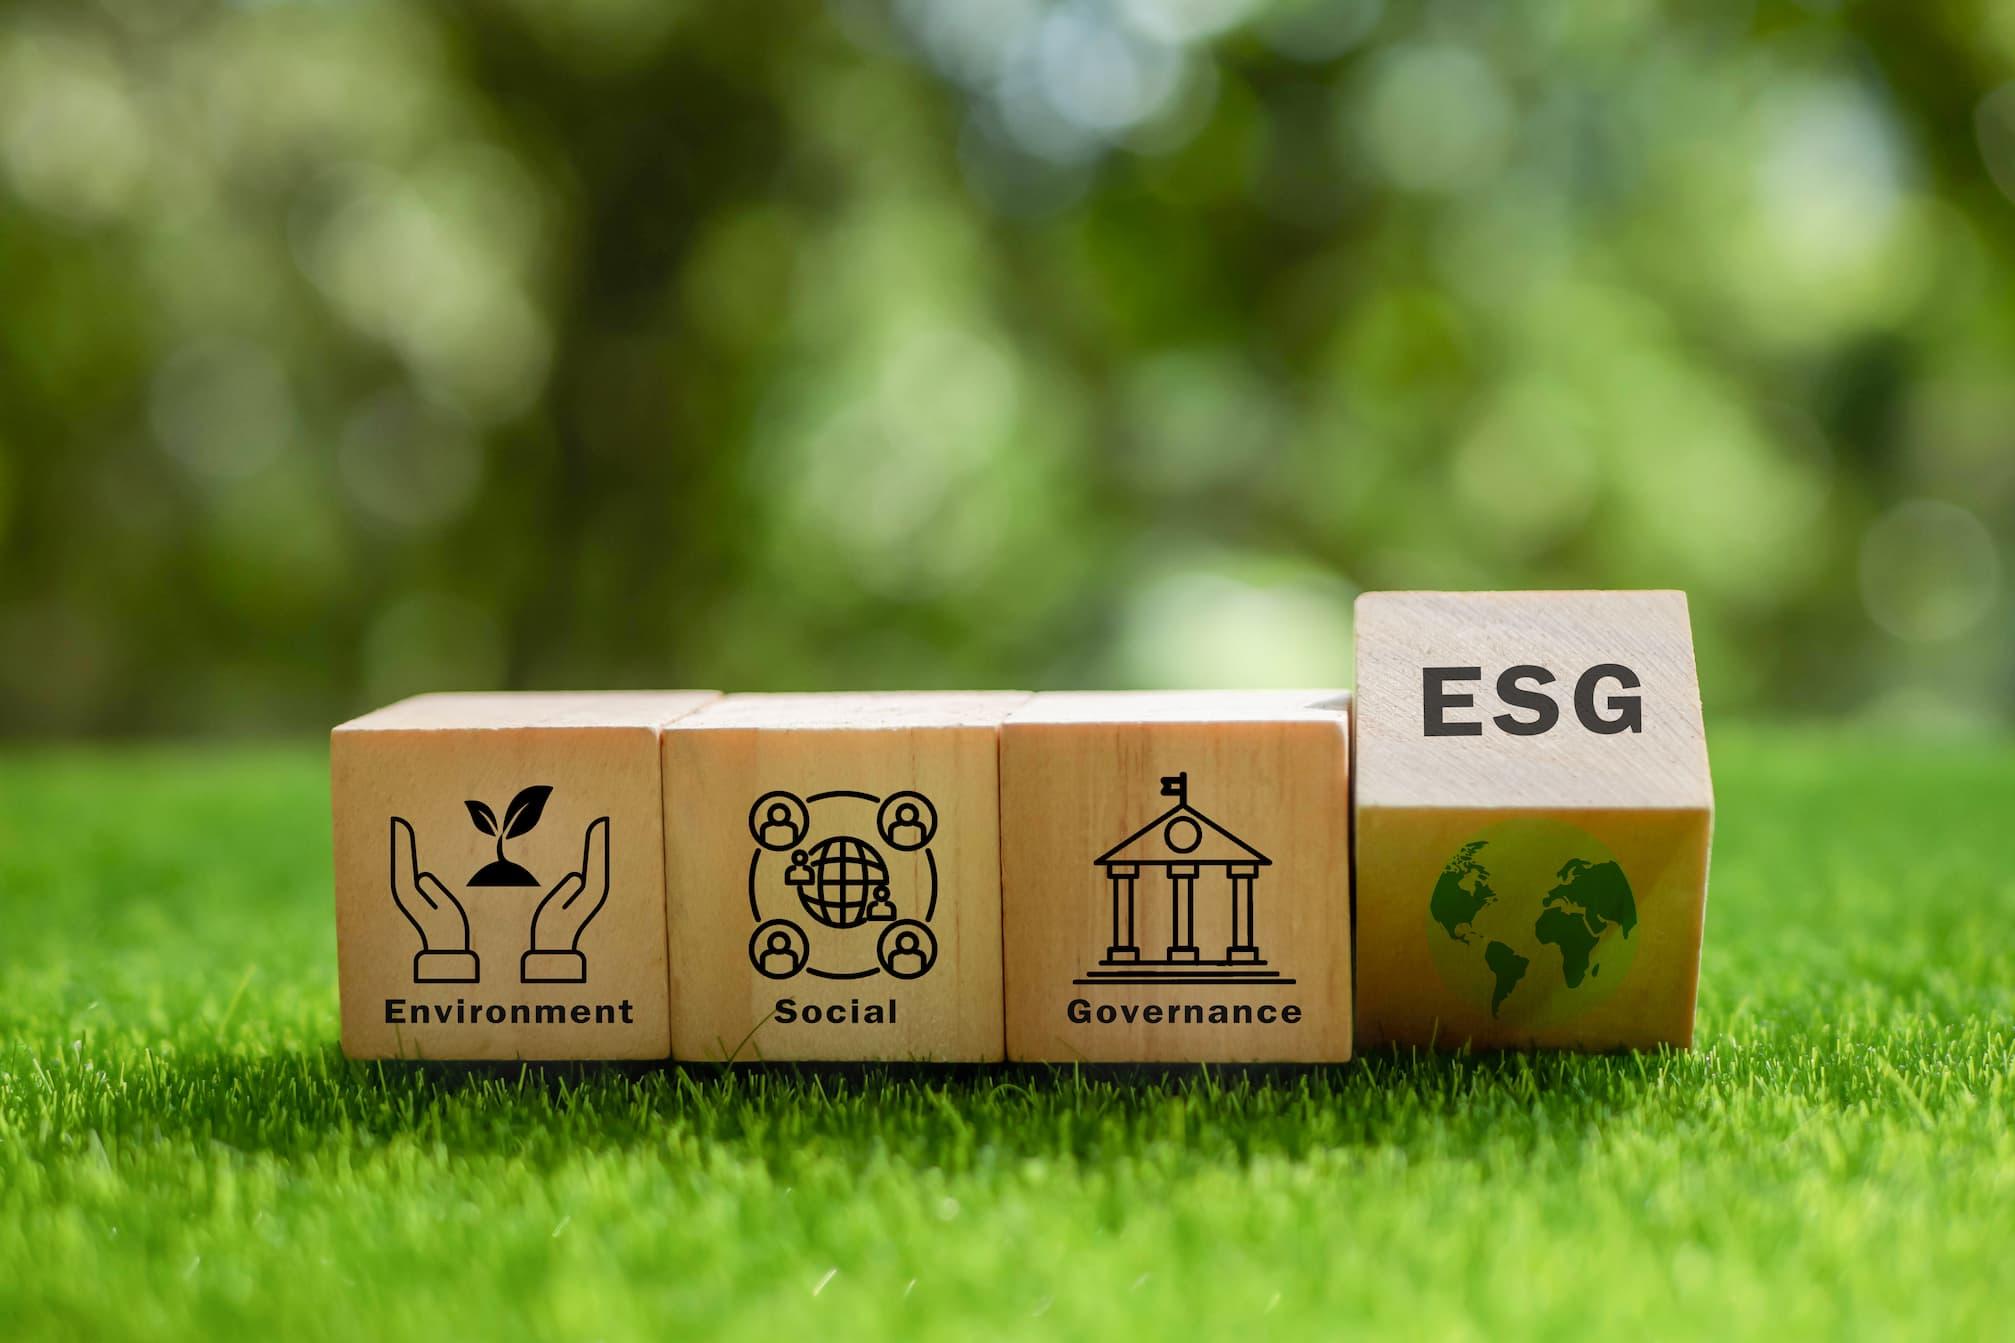 Sebrae Minas - Inovação inclusiva e futuros possíveis com foco em ESG